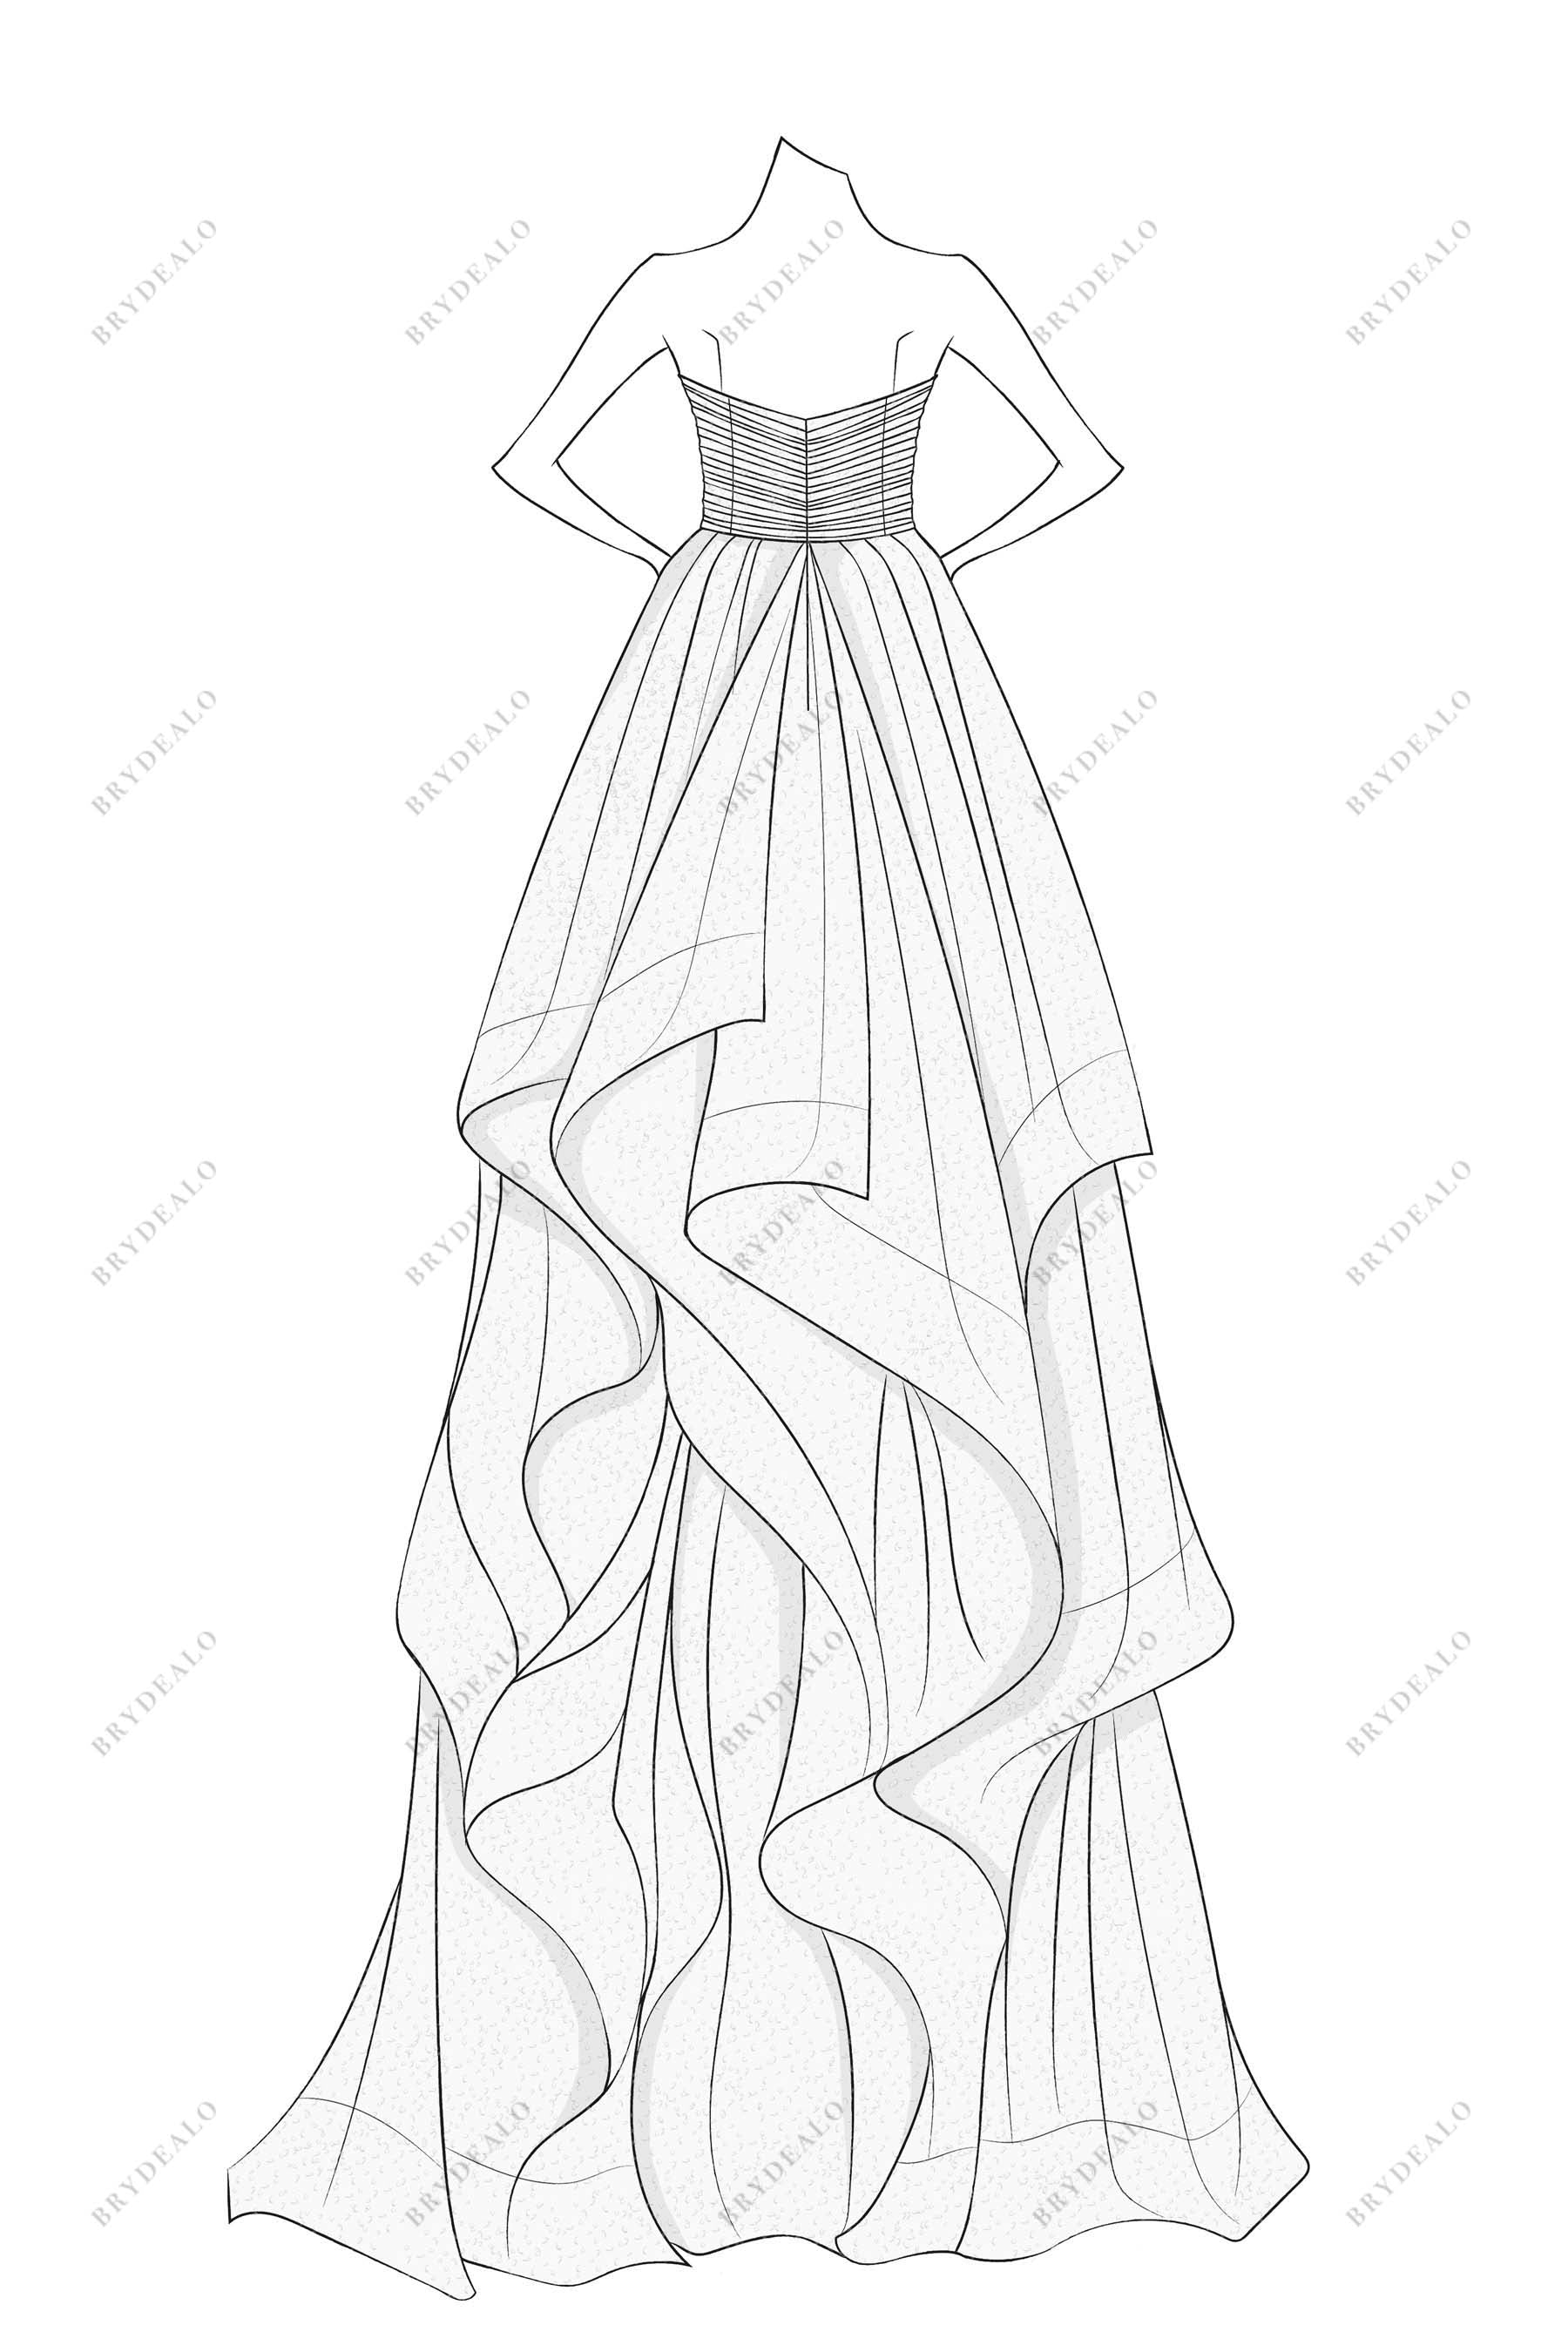 A-line custom-made wedding dress sketch